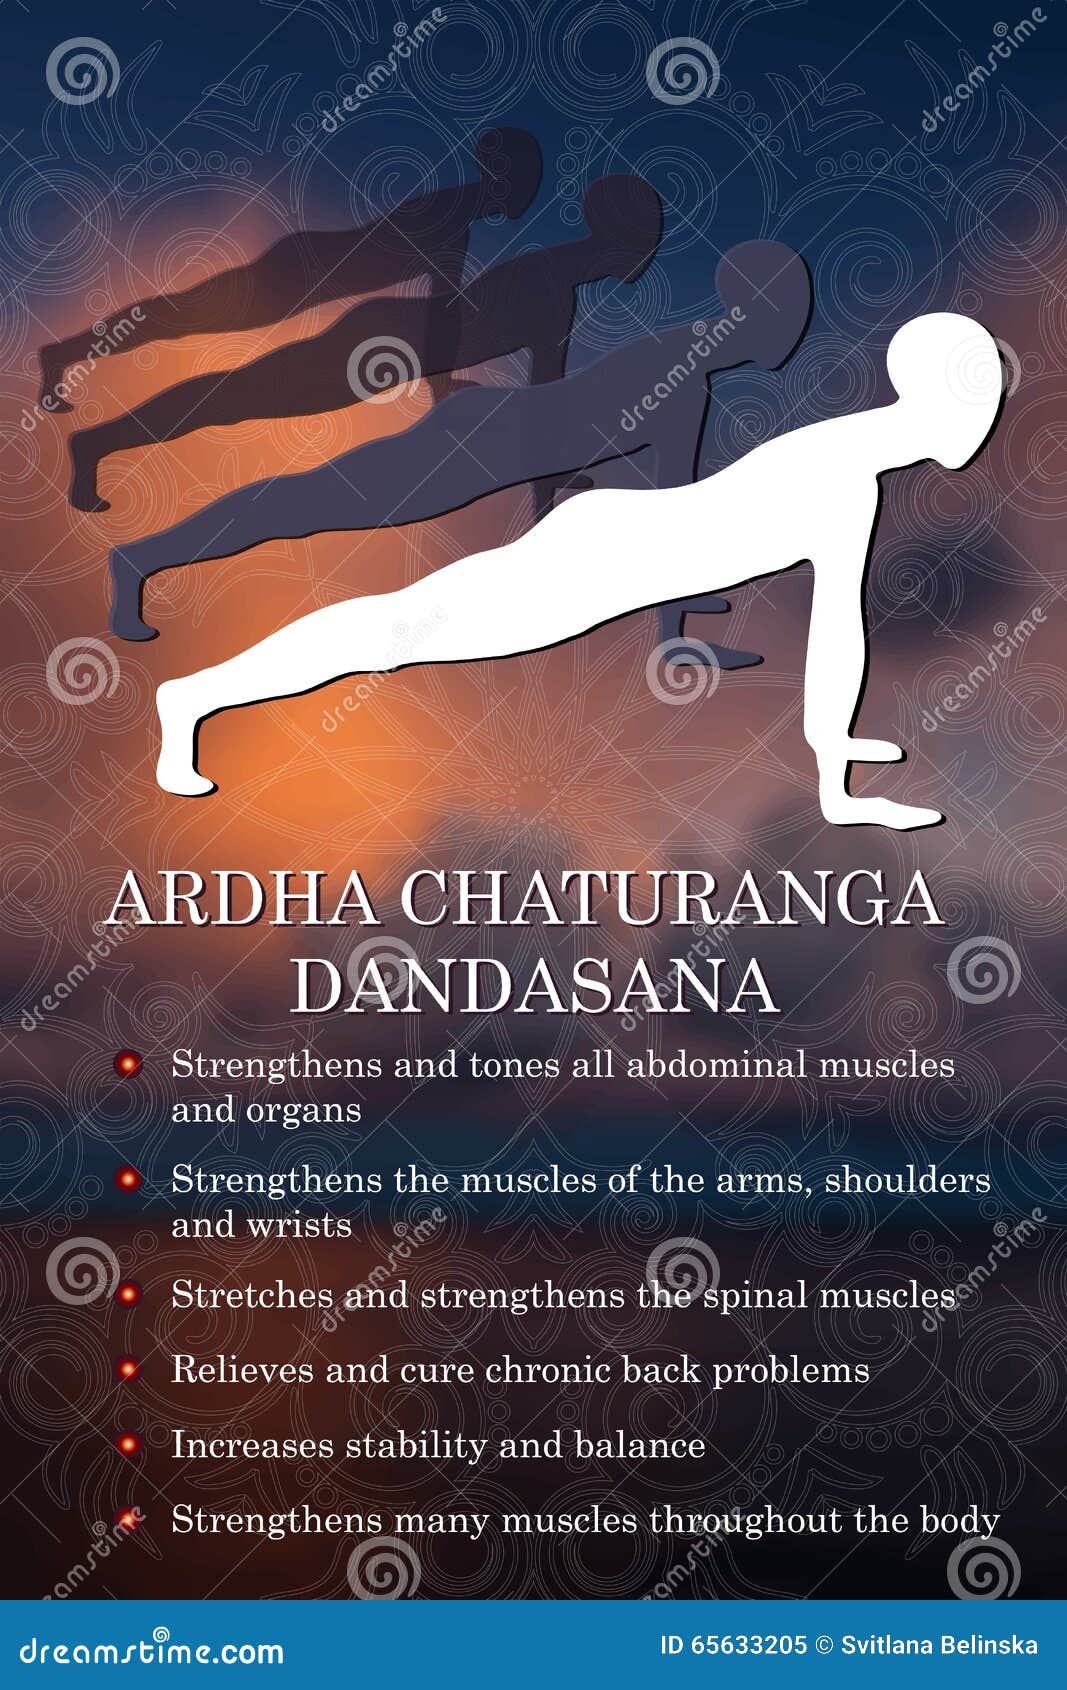 A Note on Chaturanga Dandasana & its Benefits